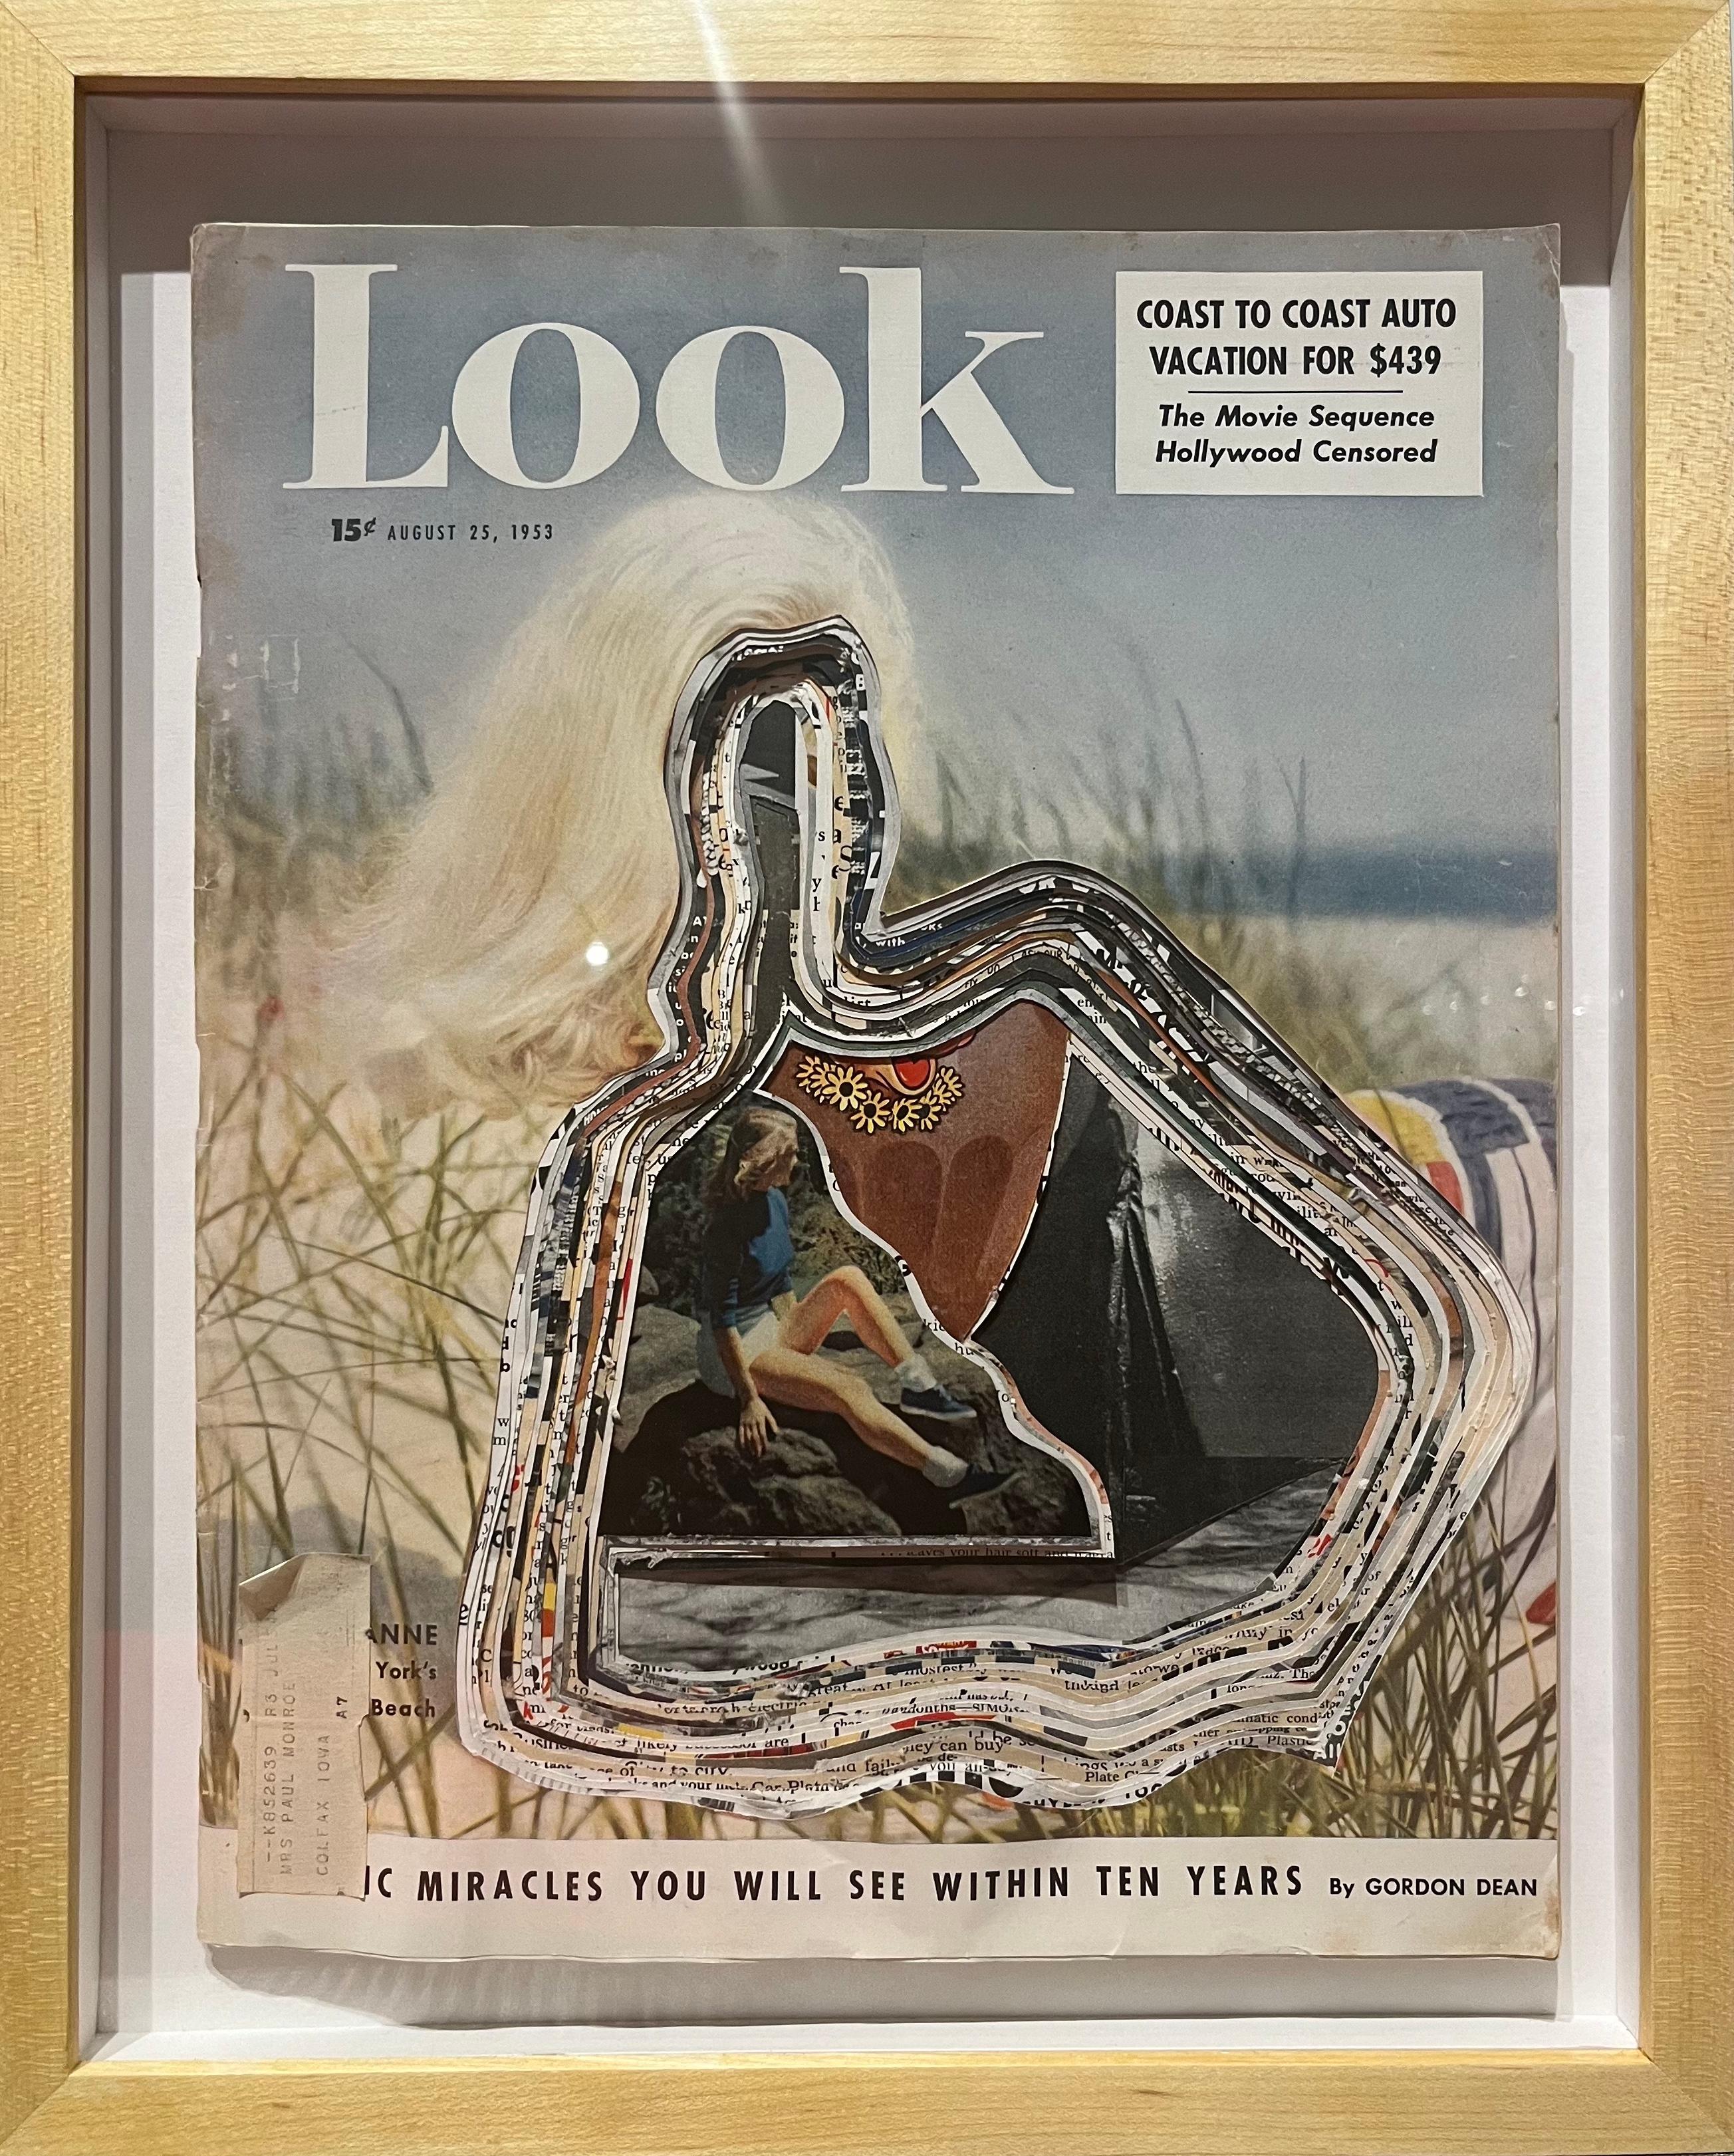 Look, Aug 25, 1953 - Mixed Media Art by Mario Zoots